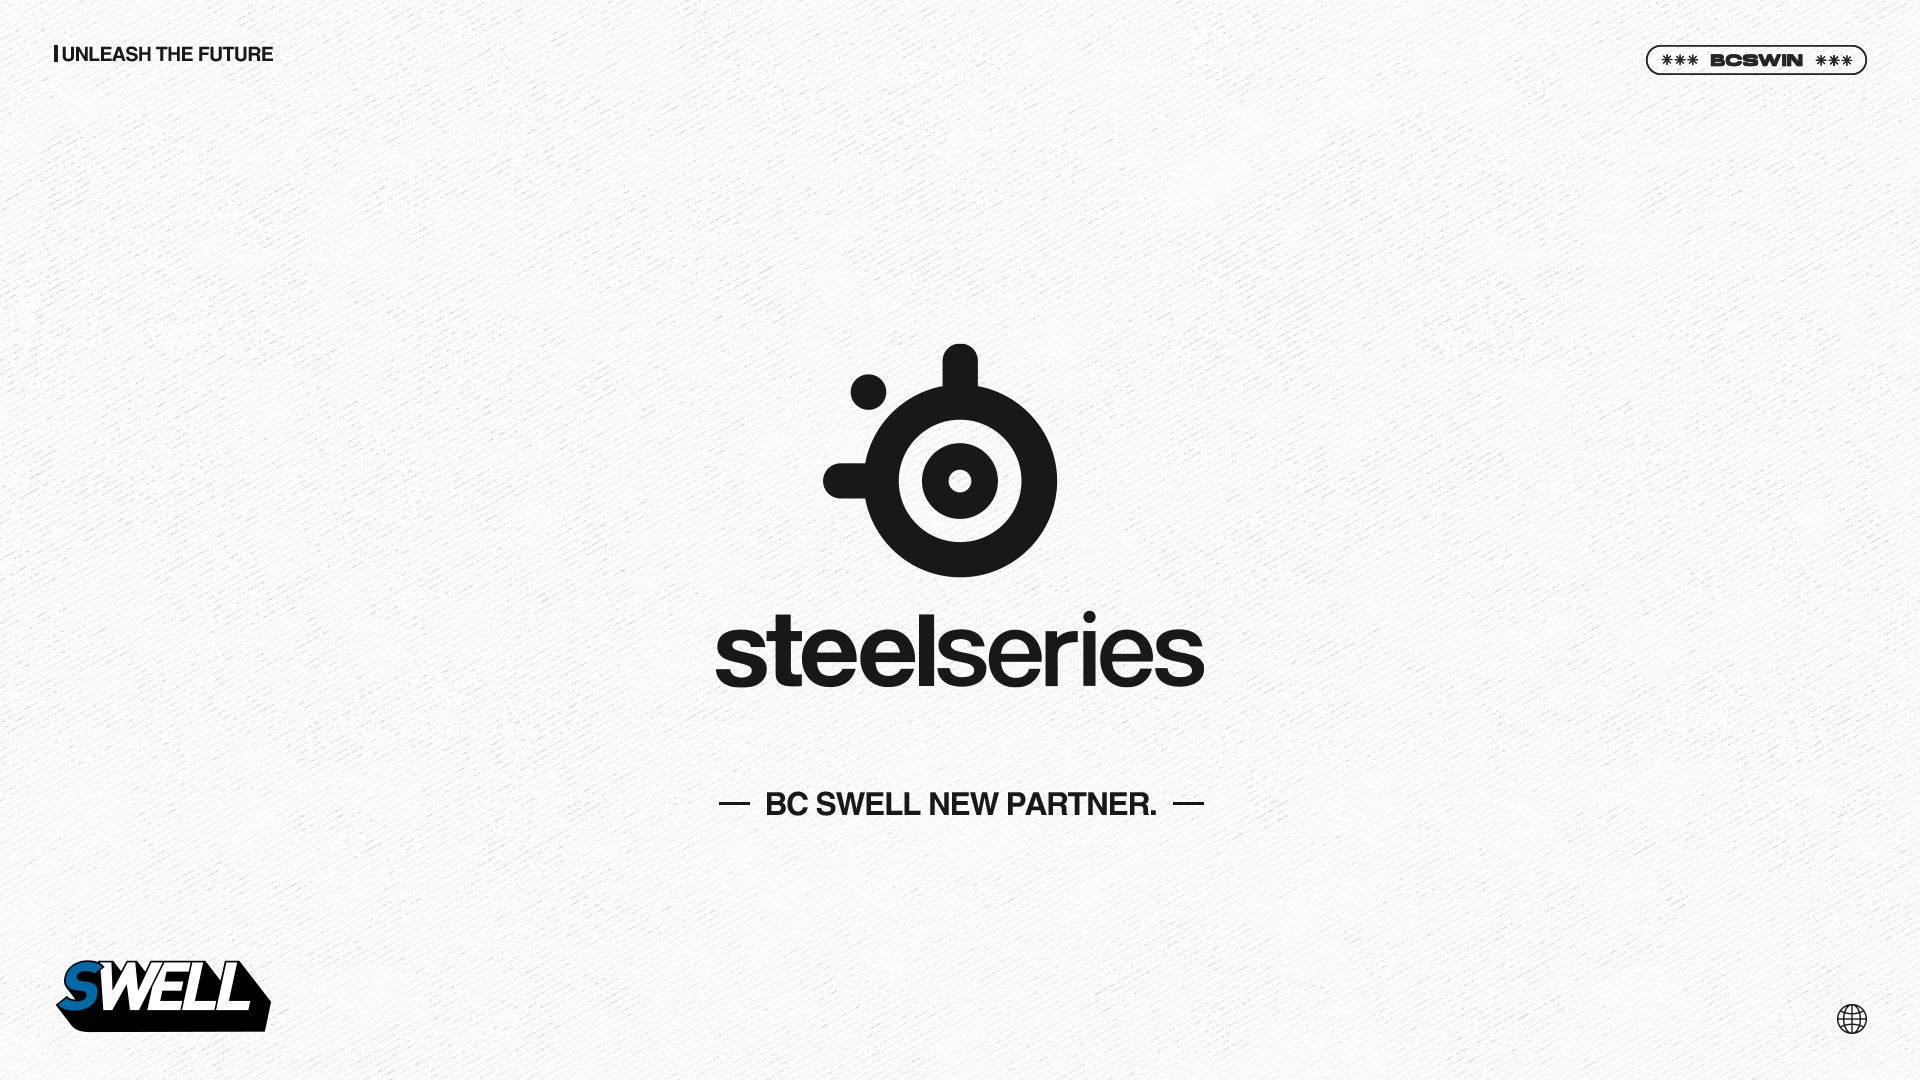 プロeスポーツチーム 「BC SWELL」ゲーミングデバイスブランド「SteelSeries」とのパートナーシップ契約締結のお知らせ